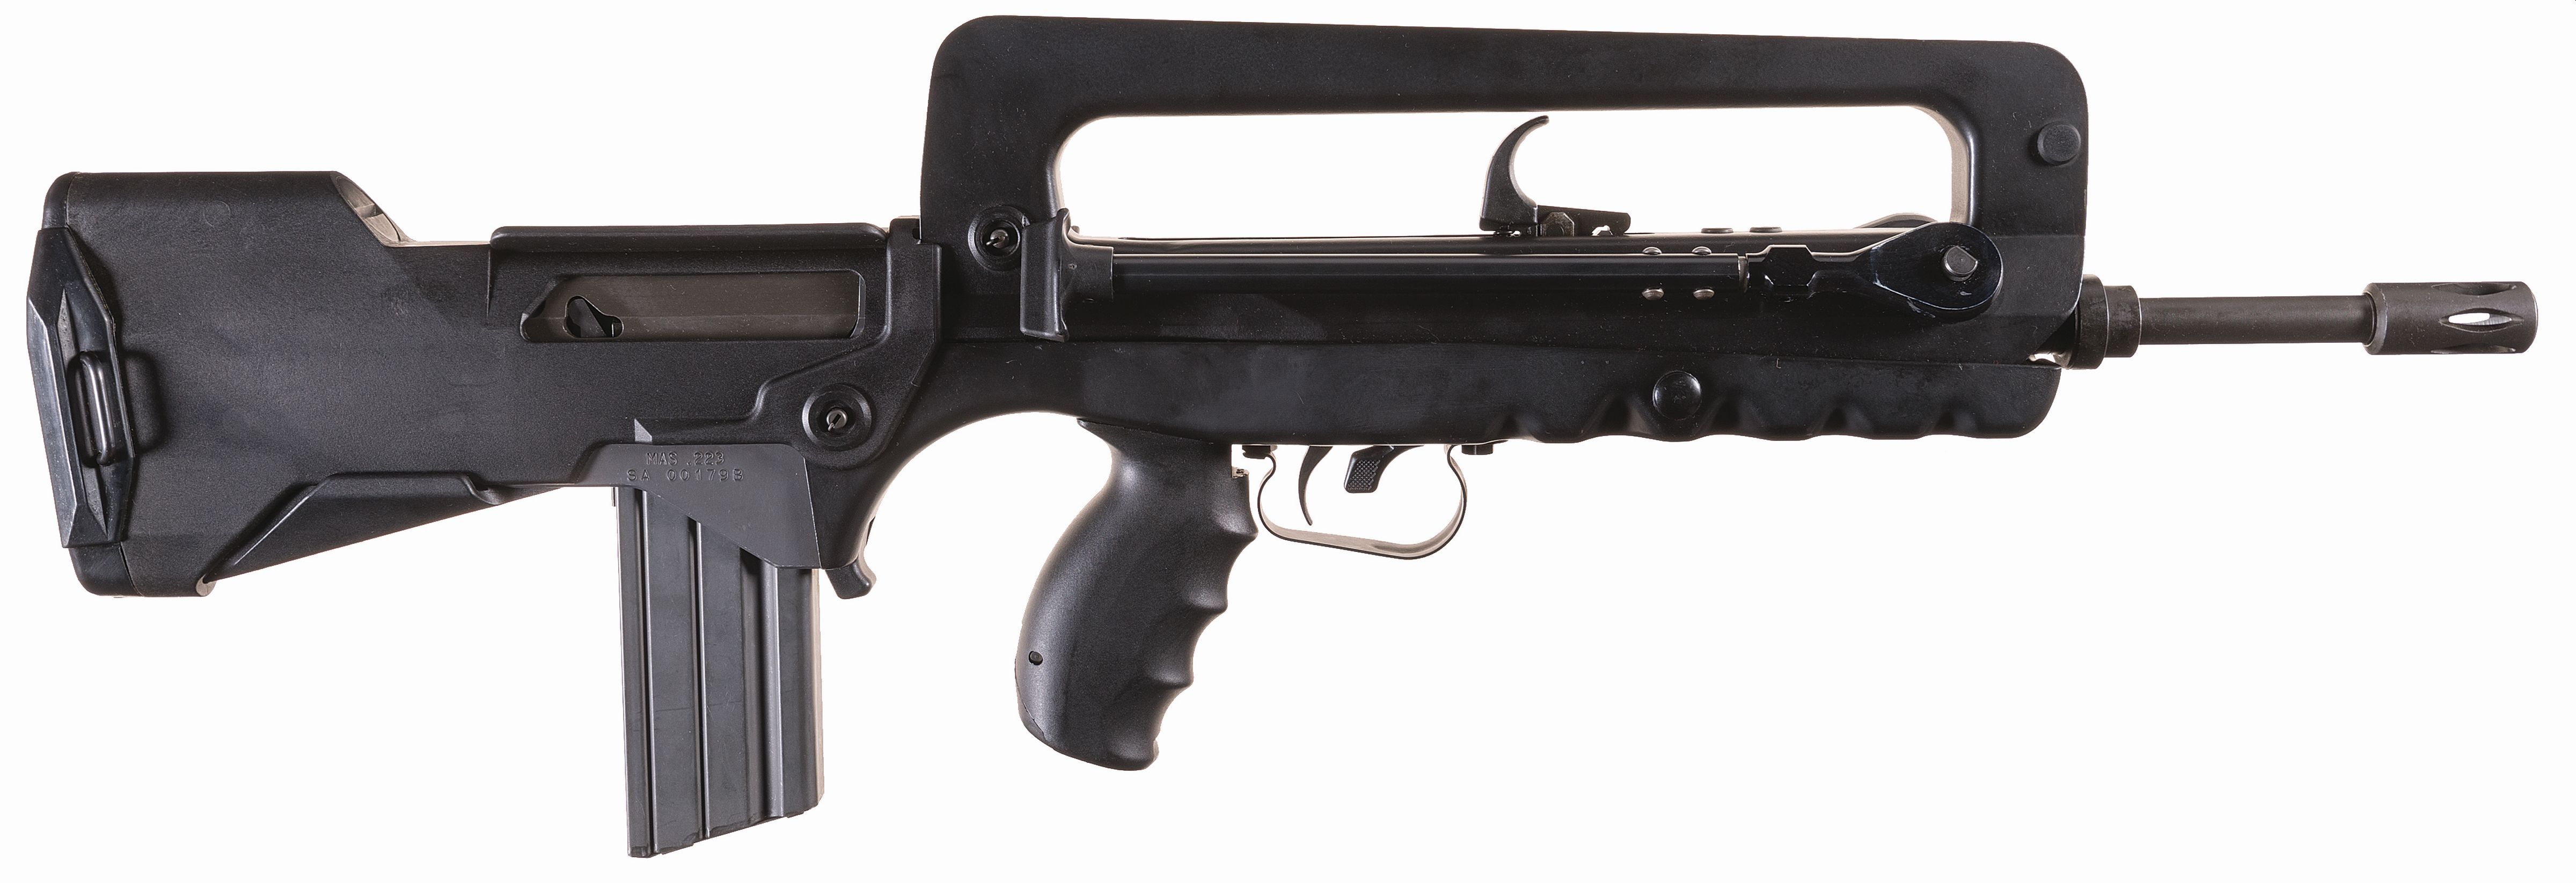 Assault rifle FAMAS Weapon Gun, assault rifle, assault Rifle